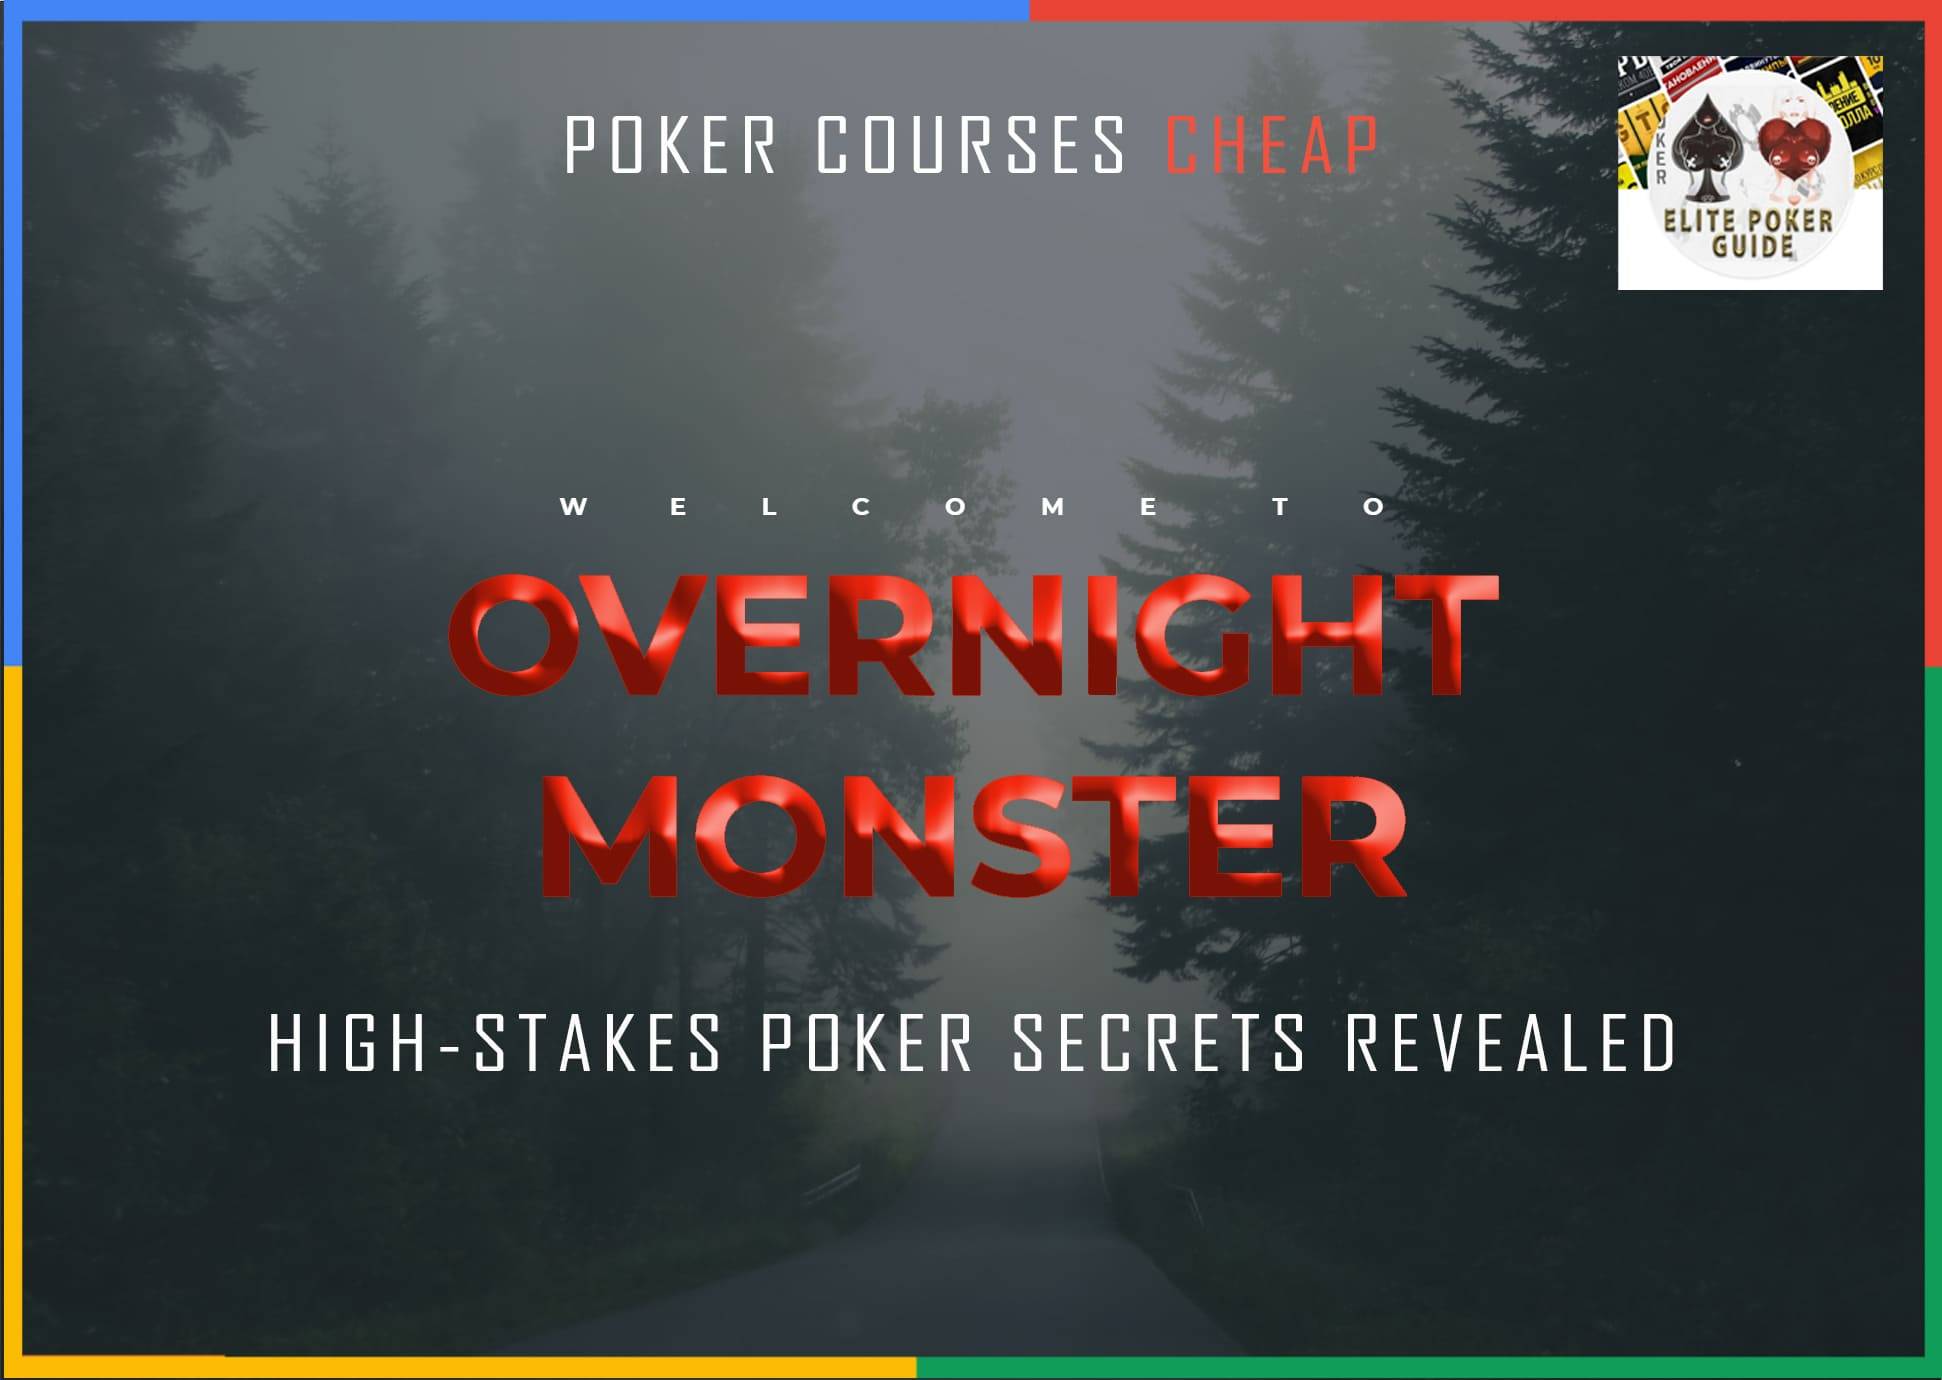 Overnight Monster: High-Stakes Poker Secrets Revealed Cheap